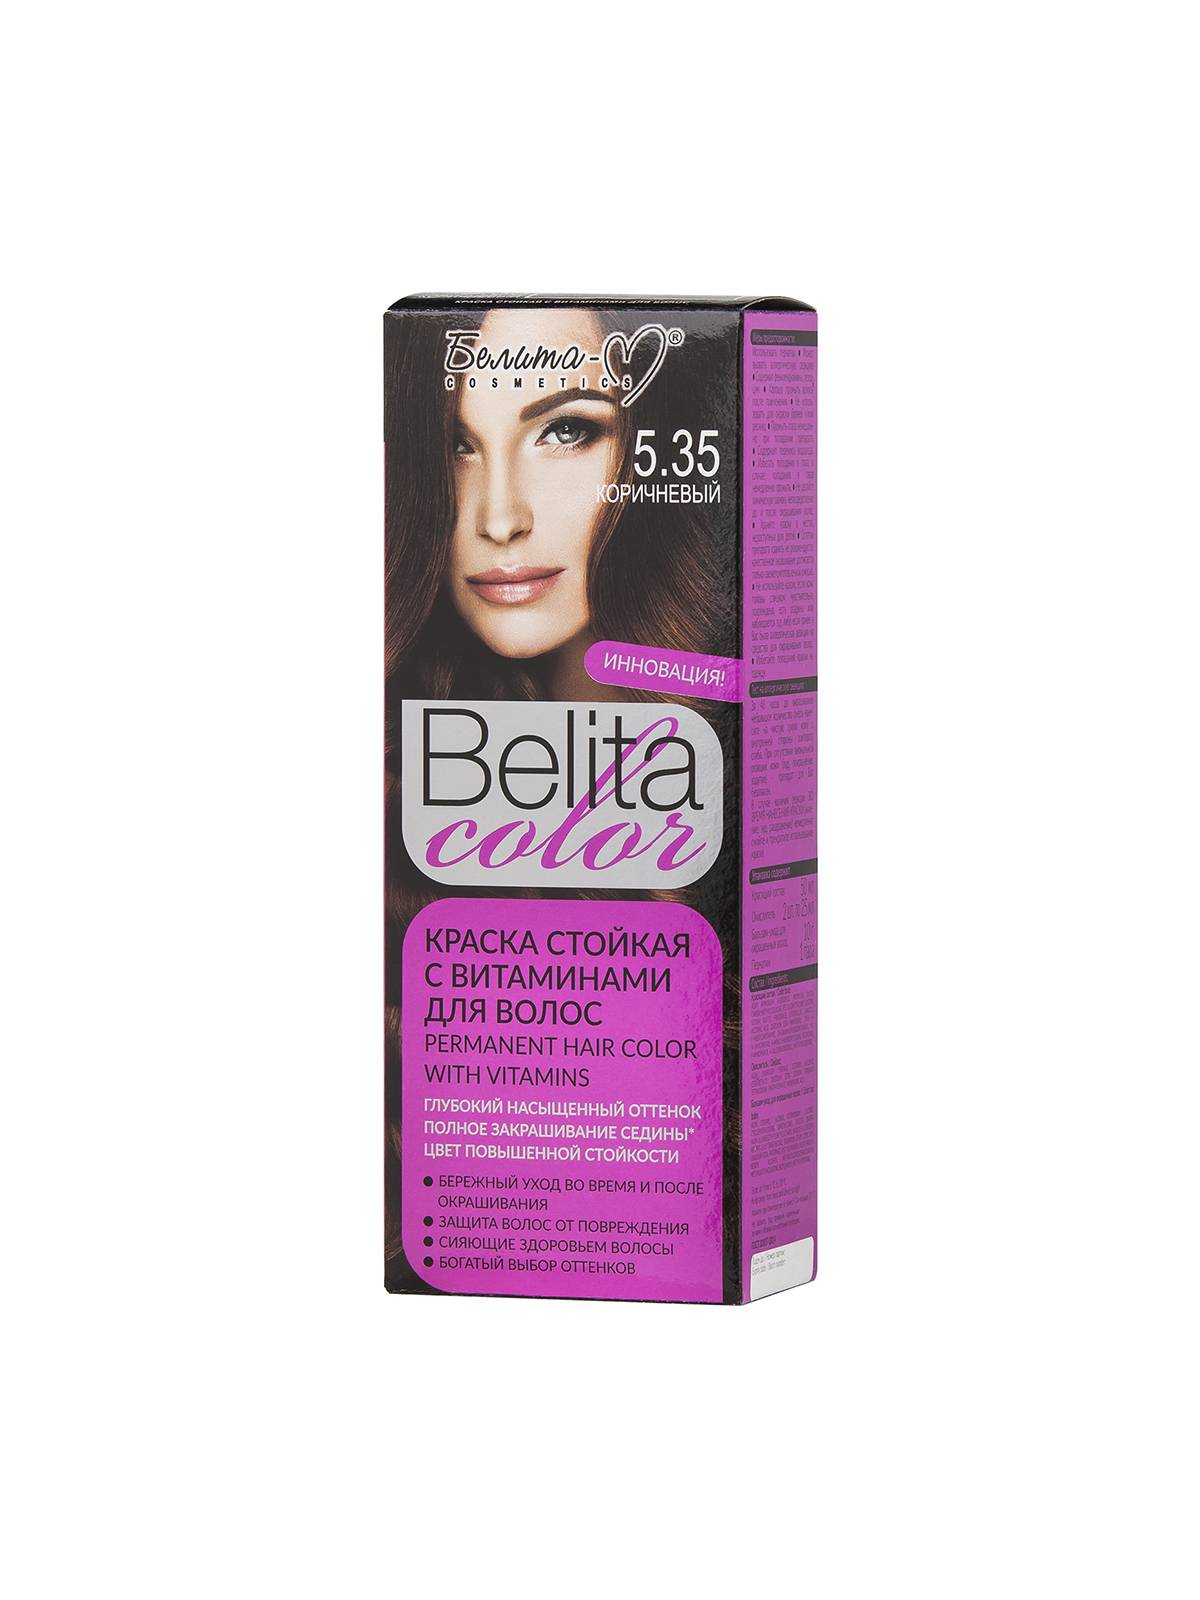 Краска стойкая с витаминами для волос серии "Belita сolor" тон №5.35 Коричневый (к-т)